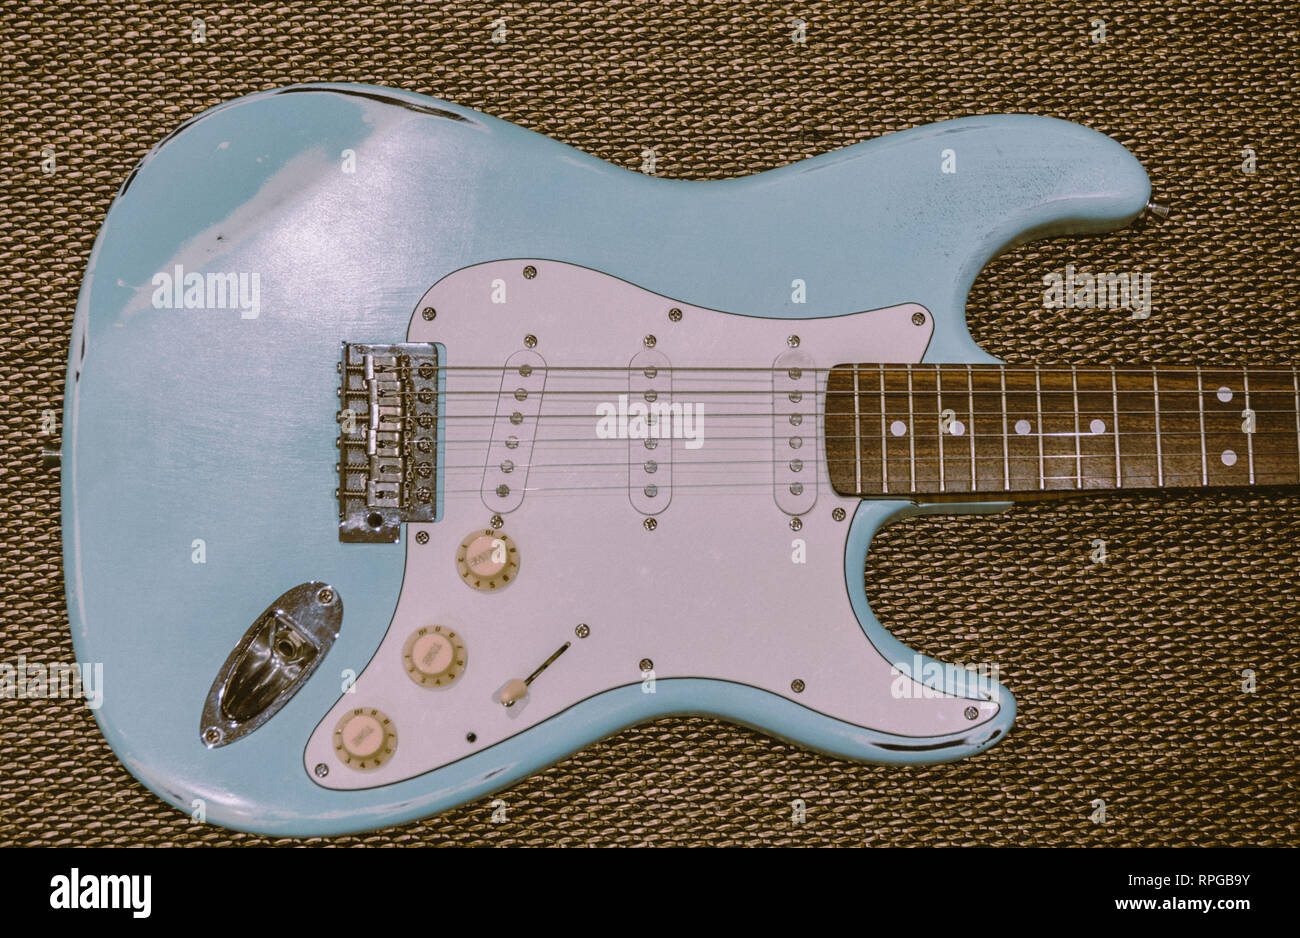 Light Blue guitare électrique dans une texture de fond. Guitare usés d'âge Banque D'Images